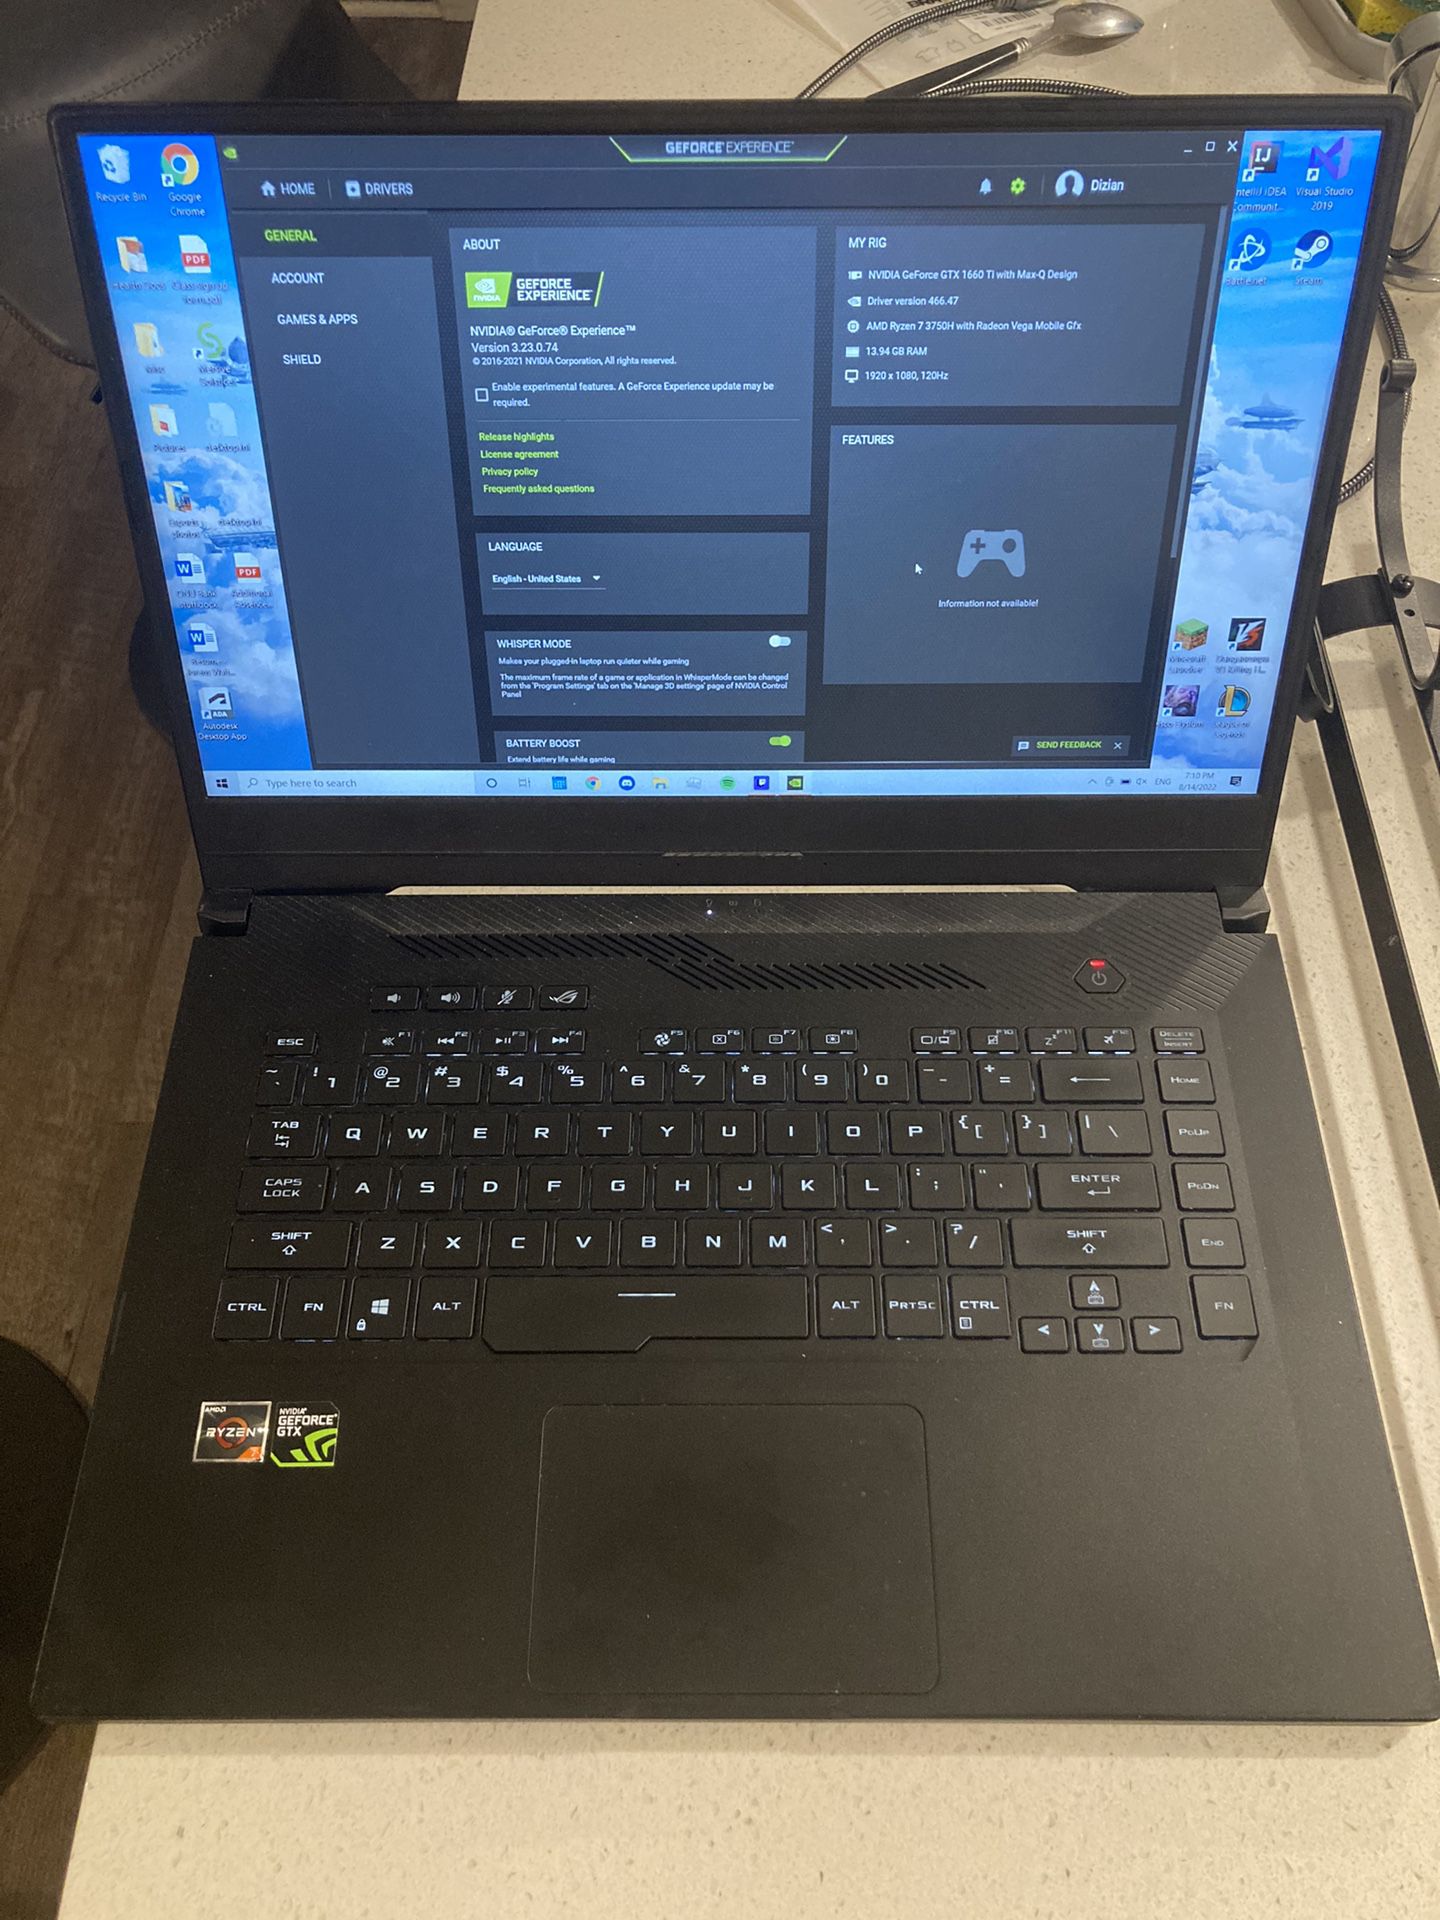 2019 ASUS Gaming Laptop (1660 TI - Ryzen 7 3750H)